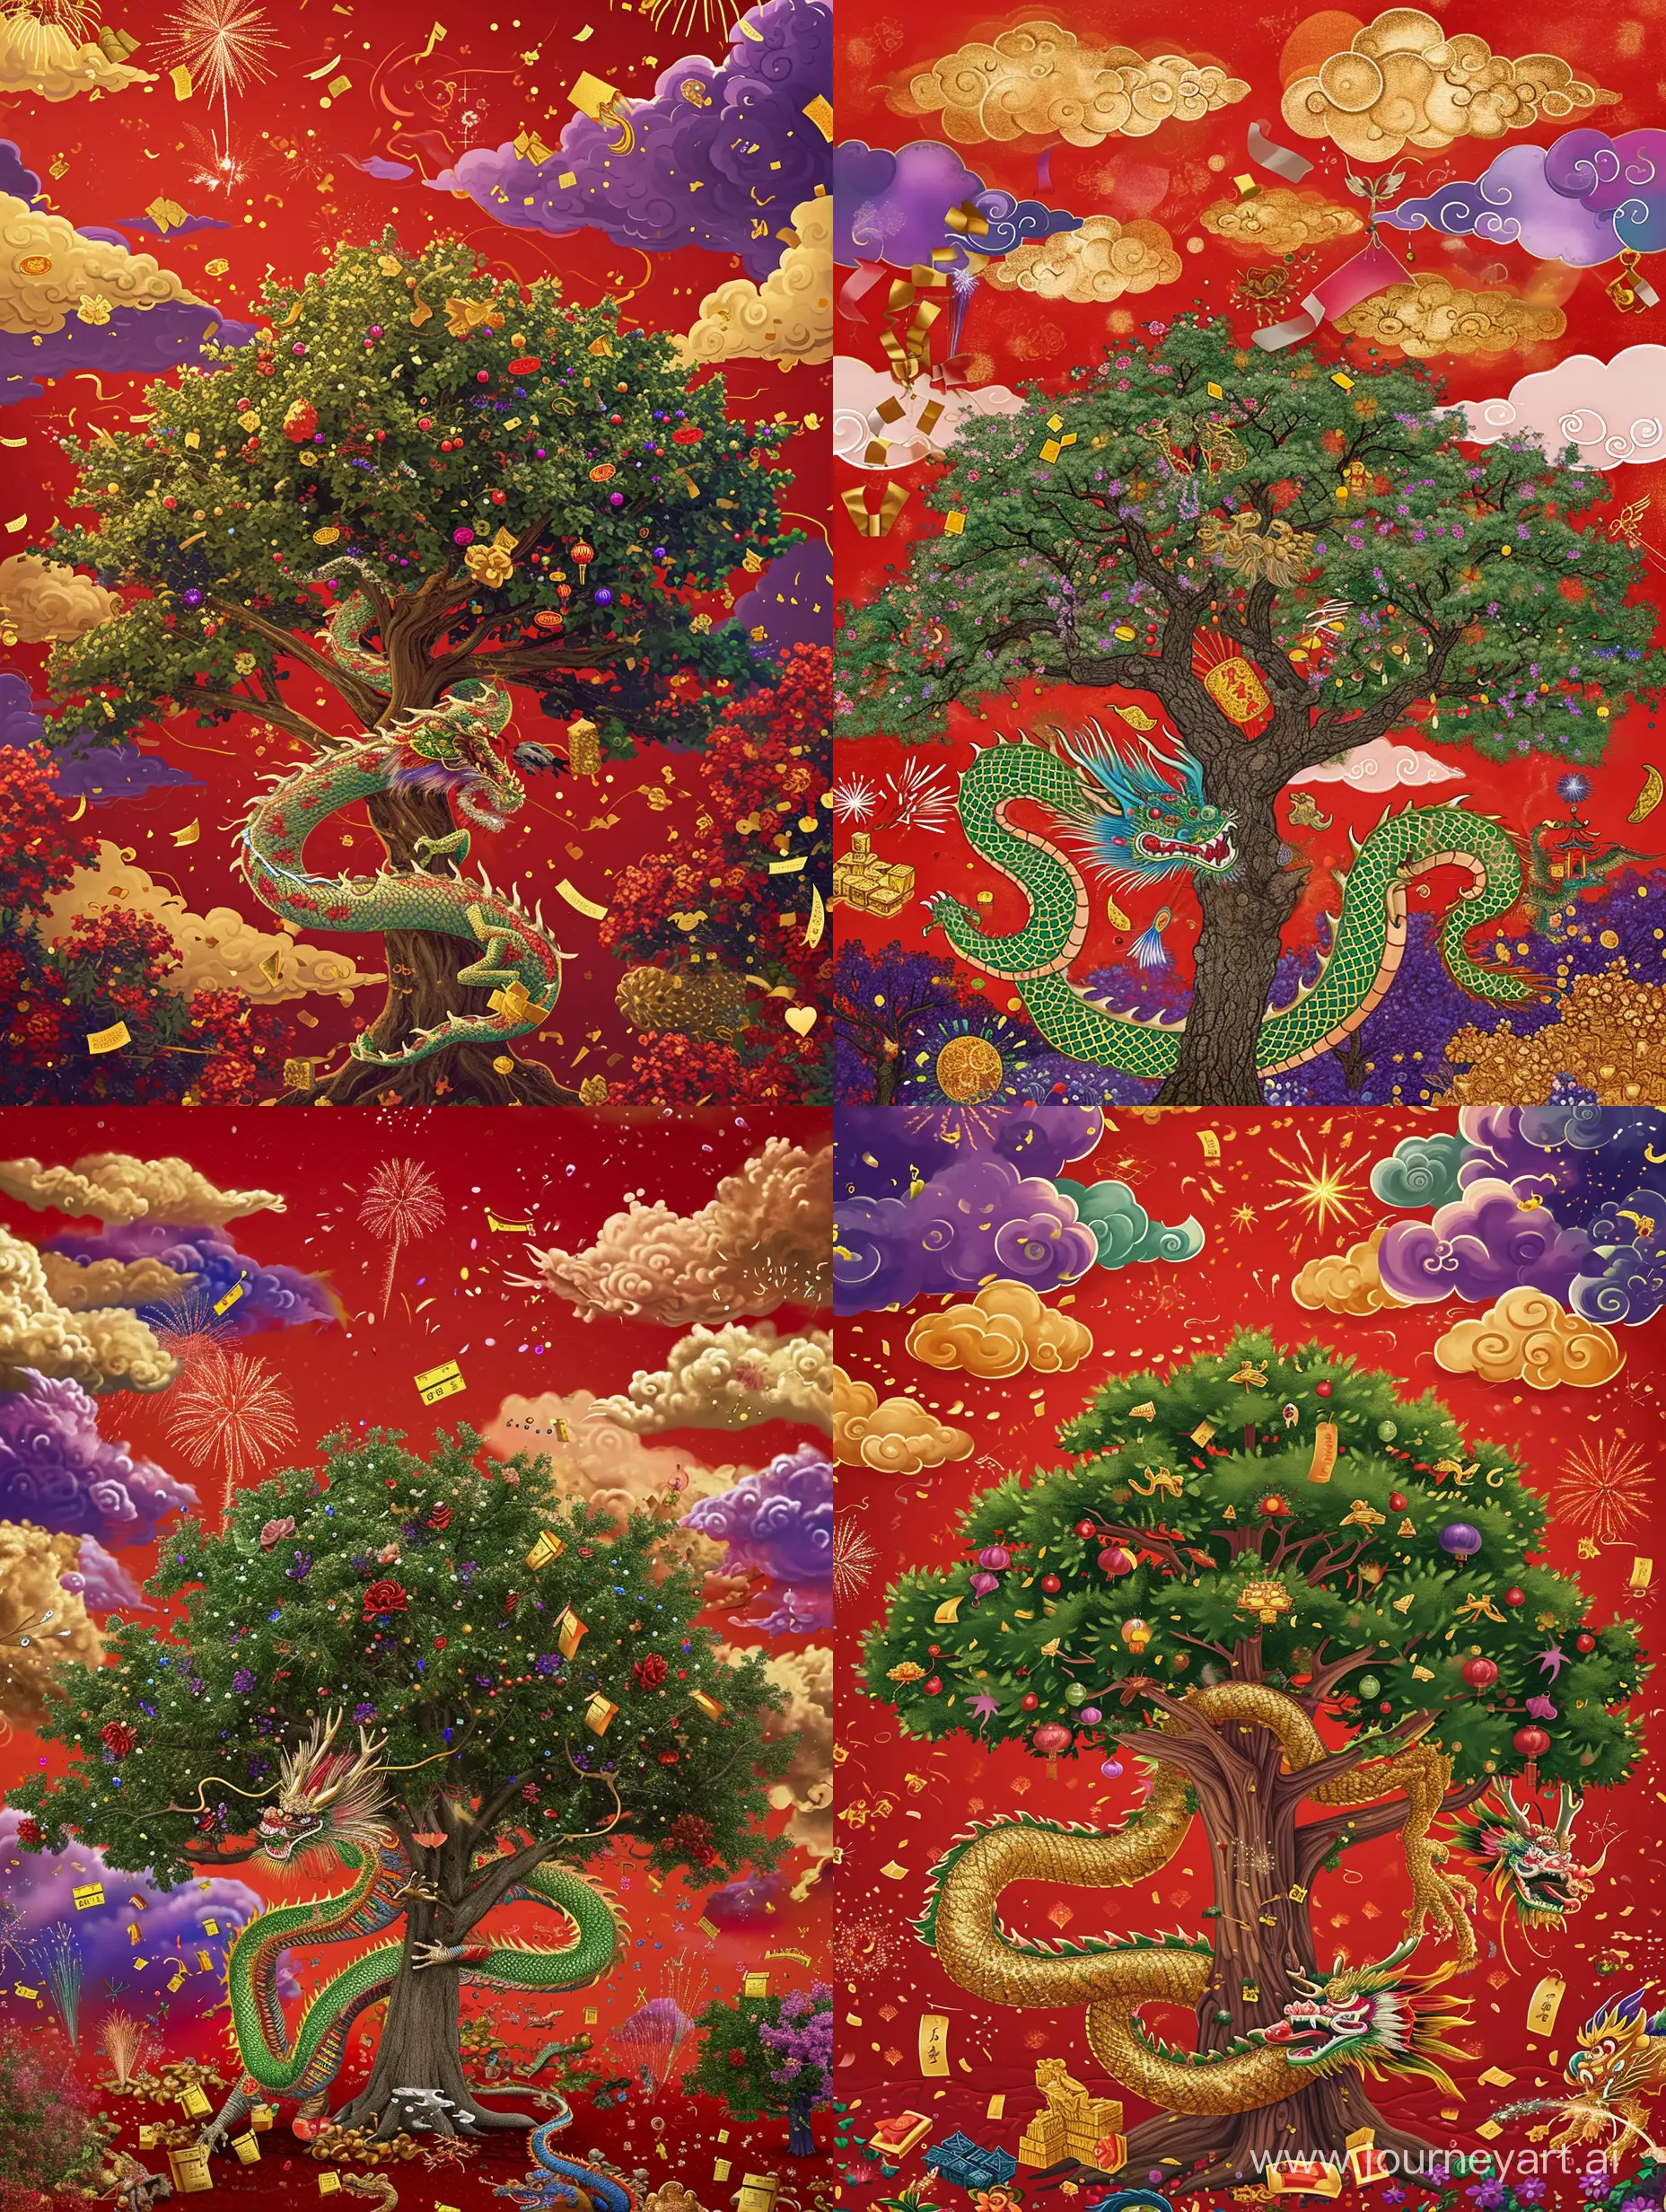 祥龙缠树，龙占主体大部分画面，红色的天空有金云紫云彩云，装饰还有金元宝，红包，鞭炮，烟花，有中国新年的气氛，